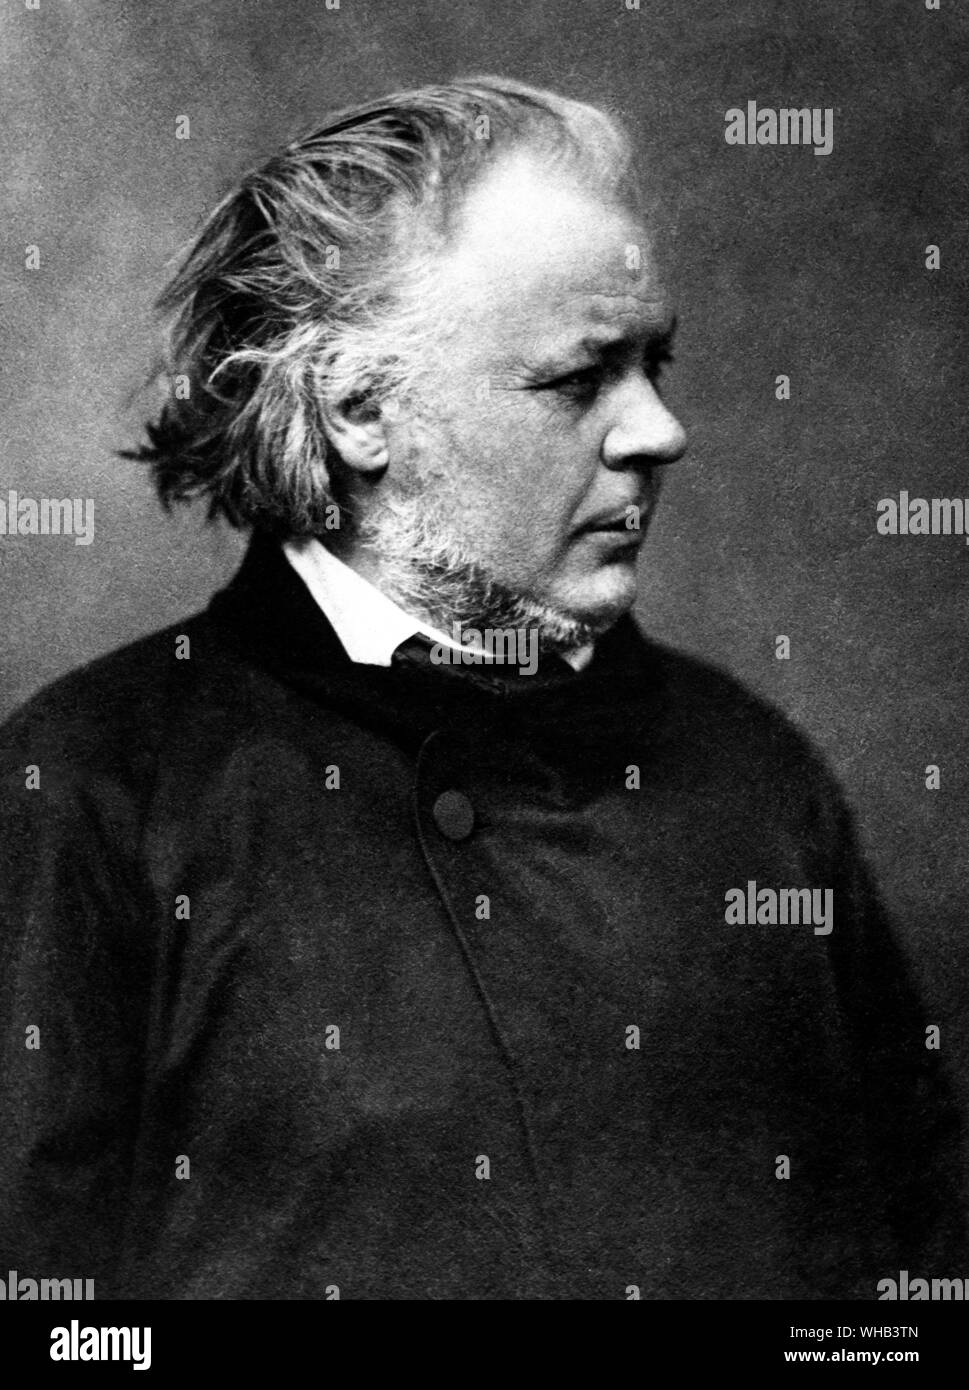 Honoré Daumier (26 février 1808 10 février 1879), était un graveur, caricaturiste, peintre, sculpteur, et l'un des plus talentueux et prolifique des dessinateurs de son temps. Banque D'Images